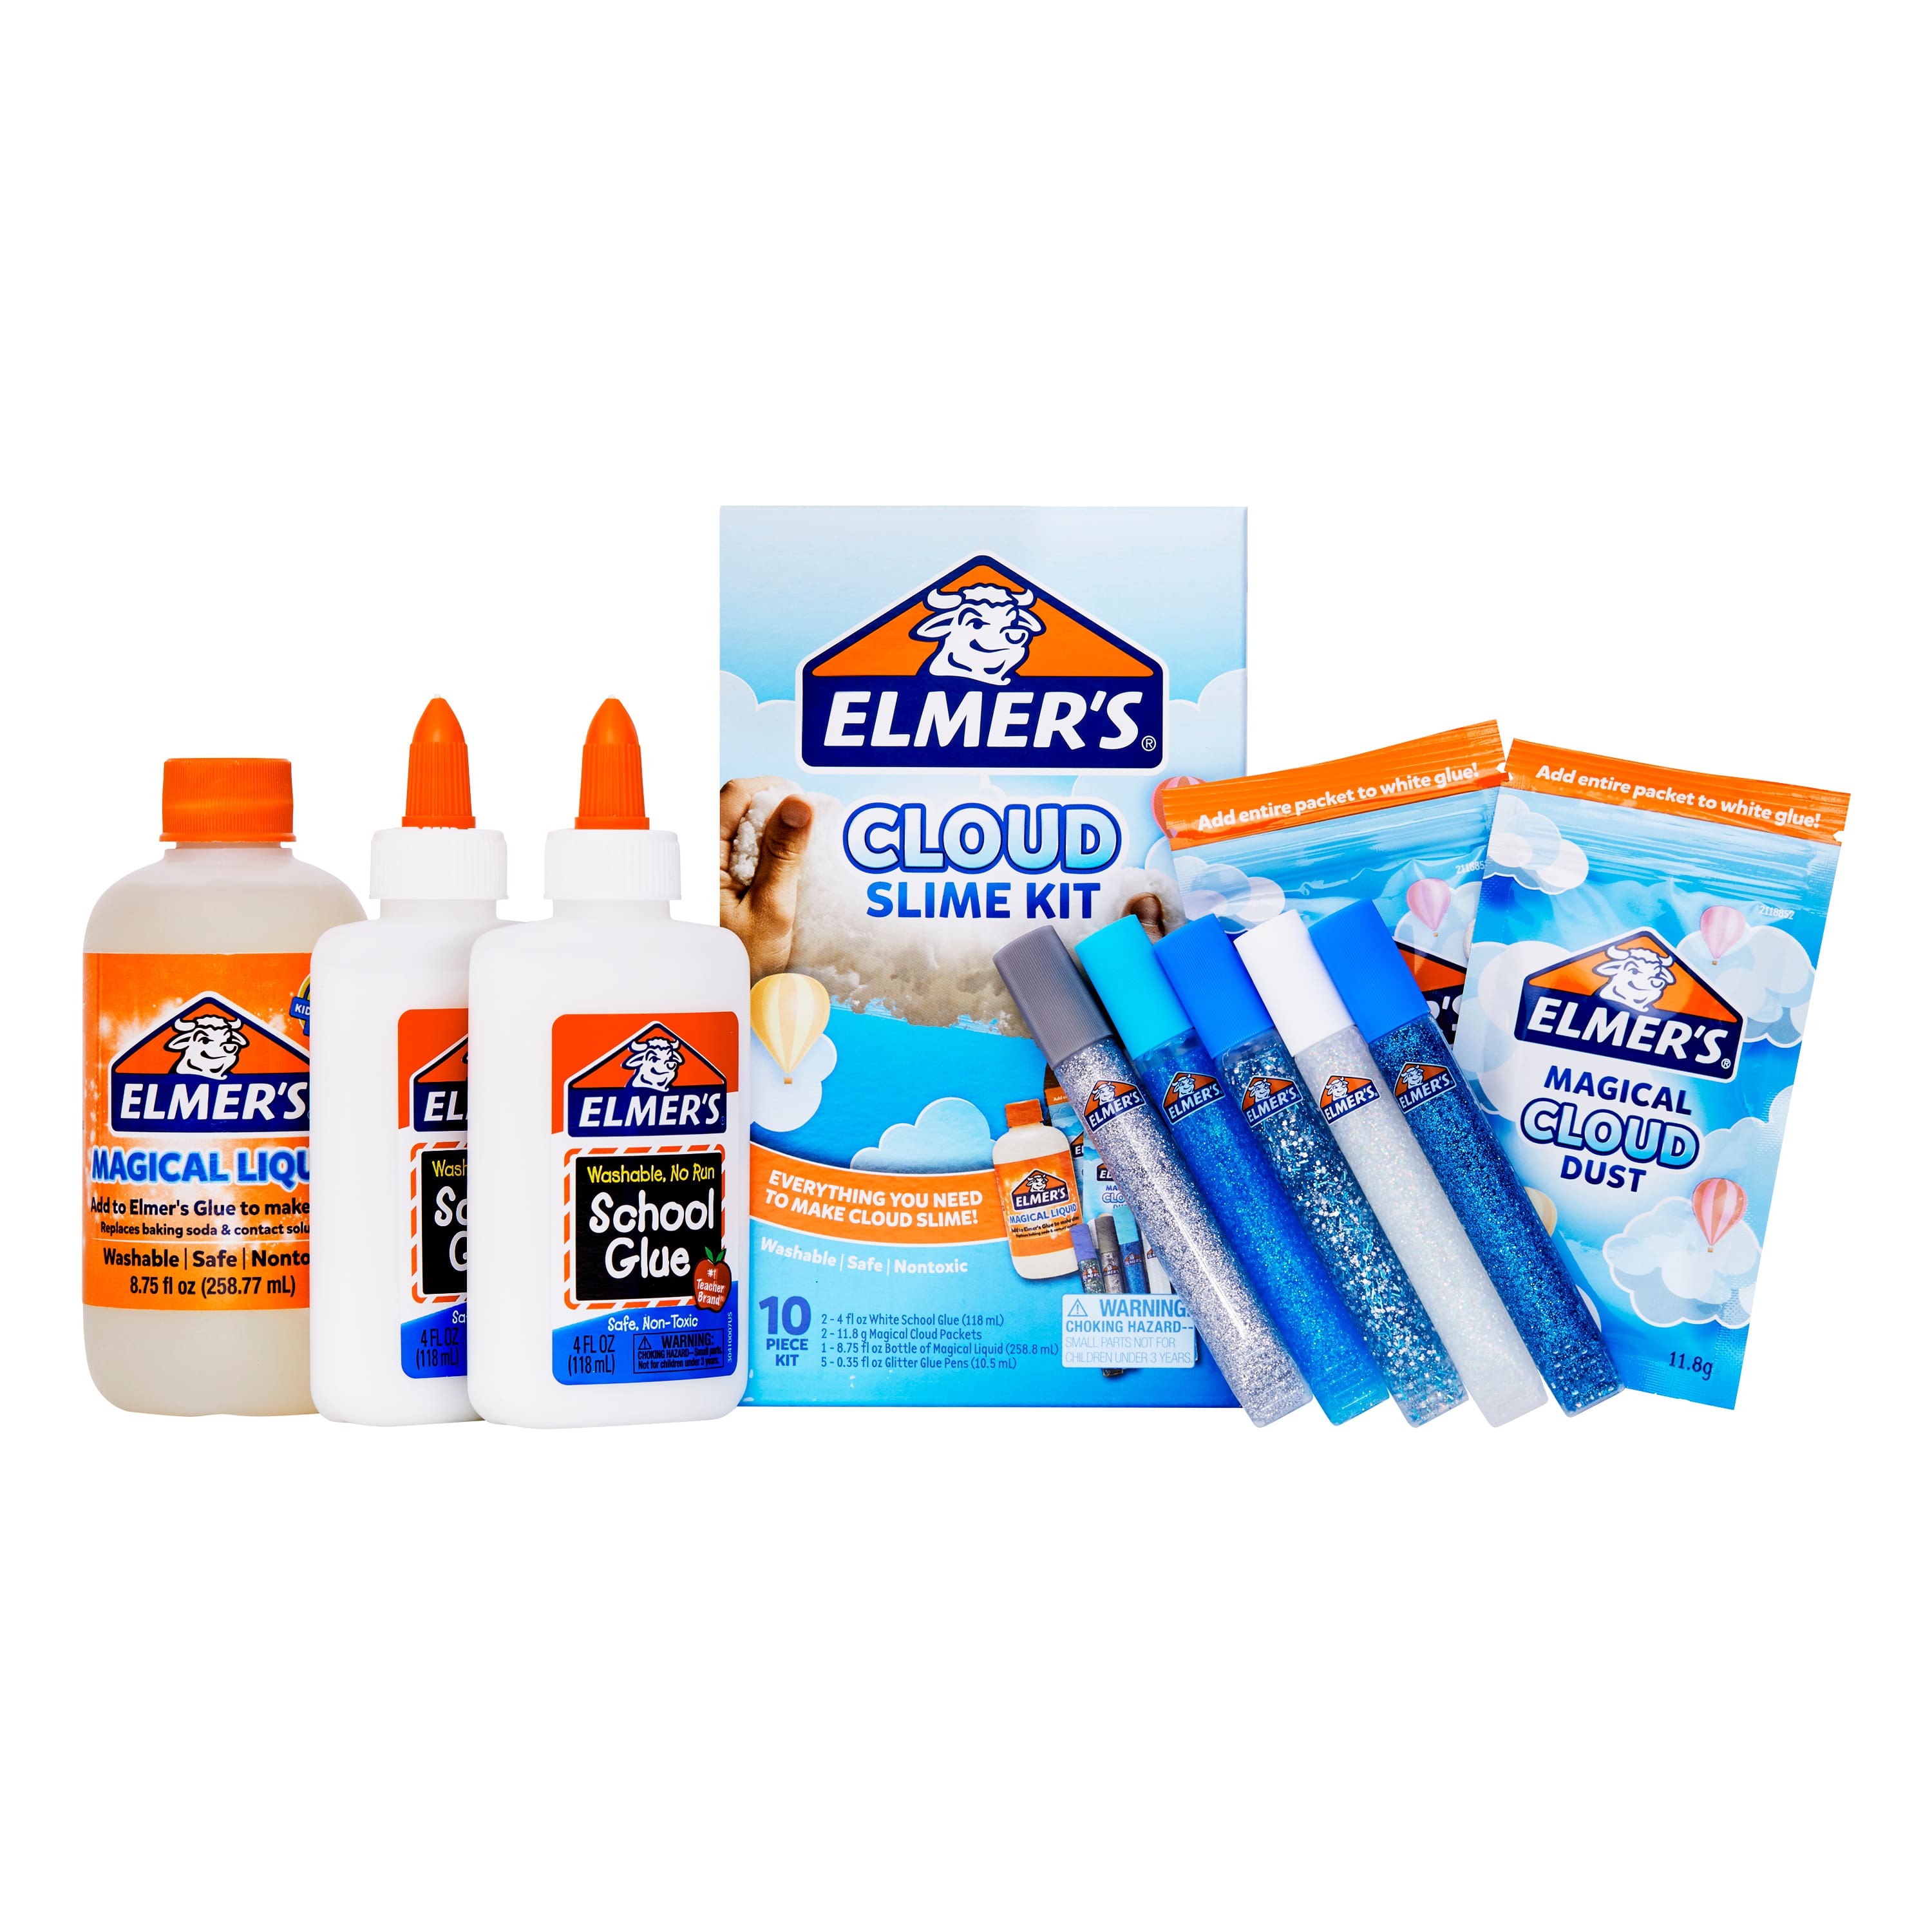 Elmer's Cloud Slime Kit